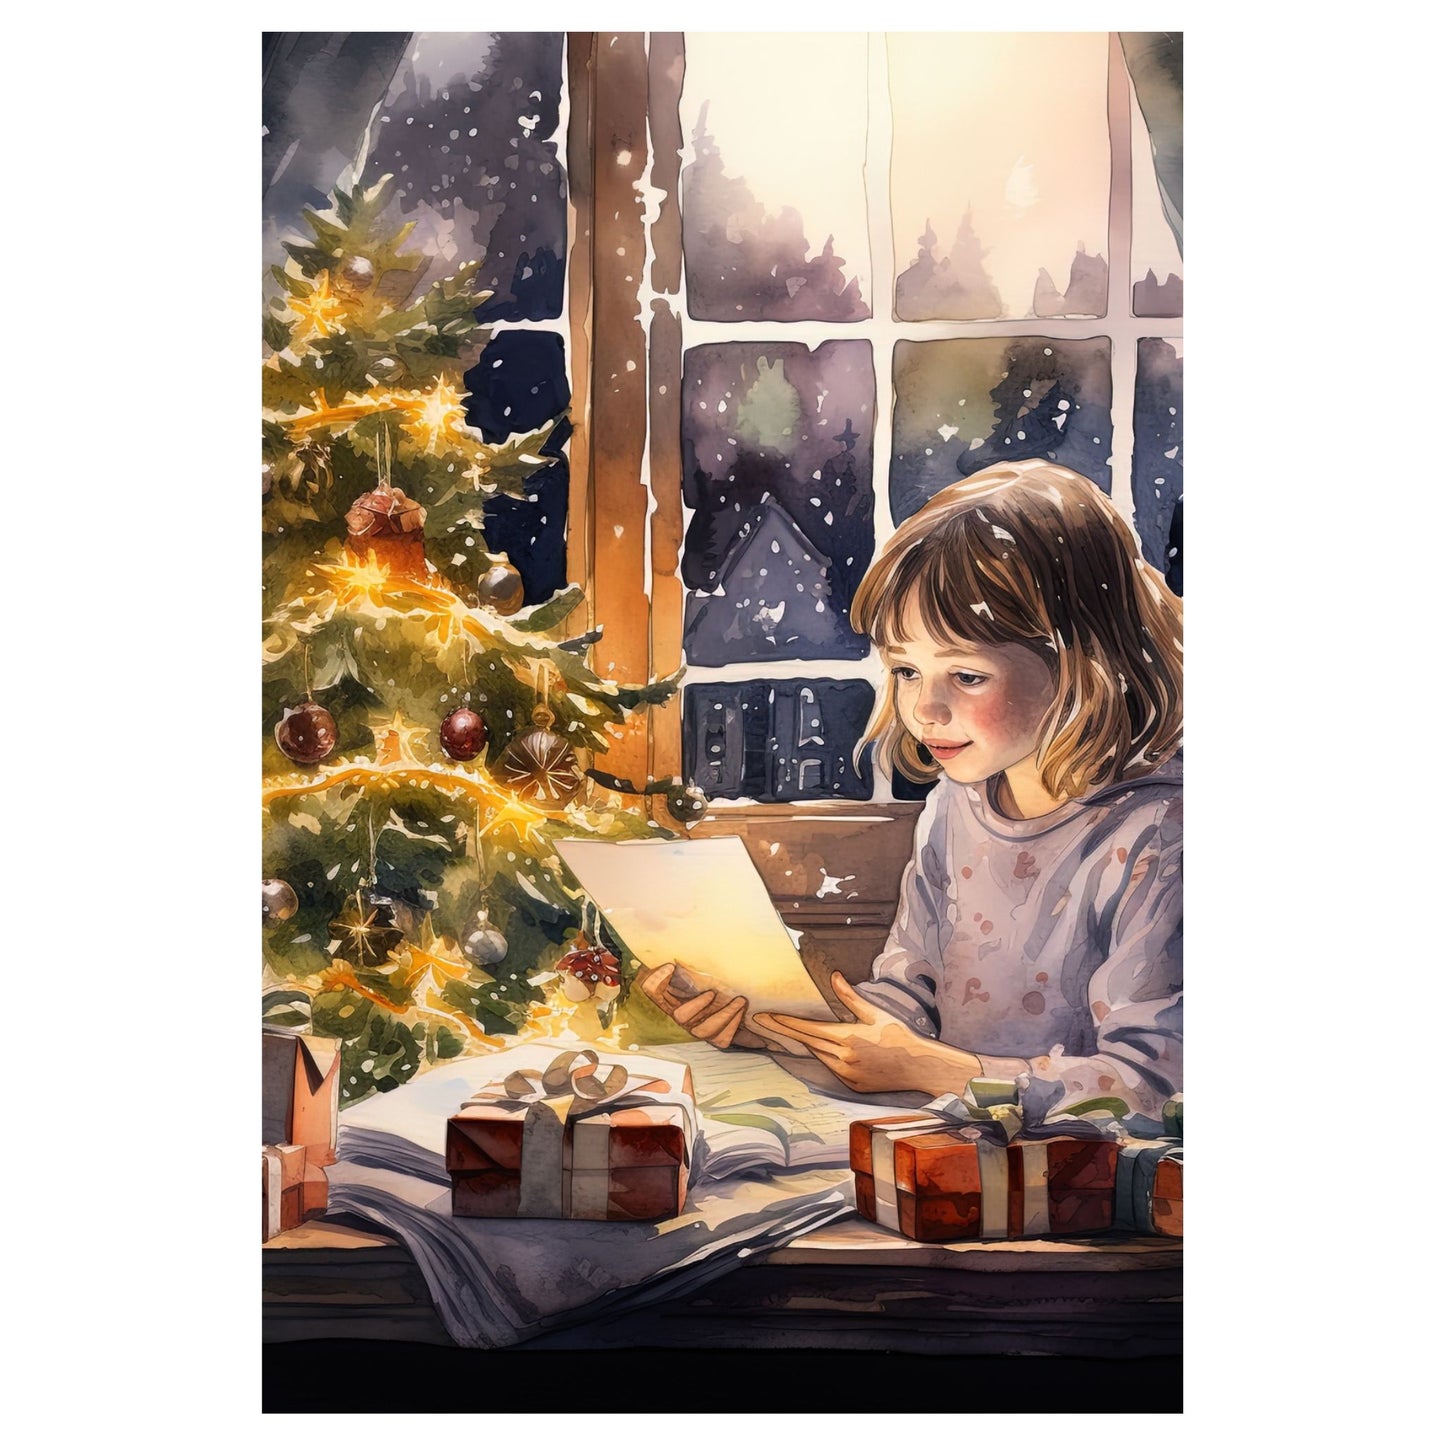 Dekorativt, grafisk julekort av et juletre,  julepakker og en jente som sitter ved et vindu. Motivet har et nostalgisk preg.